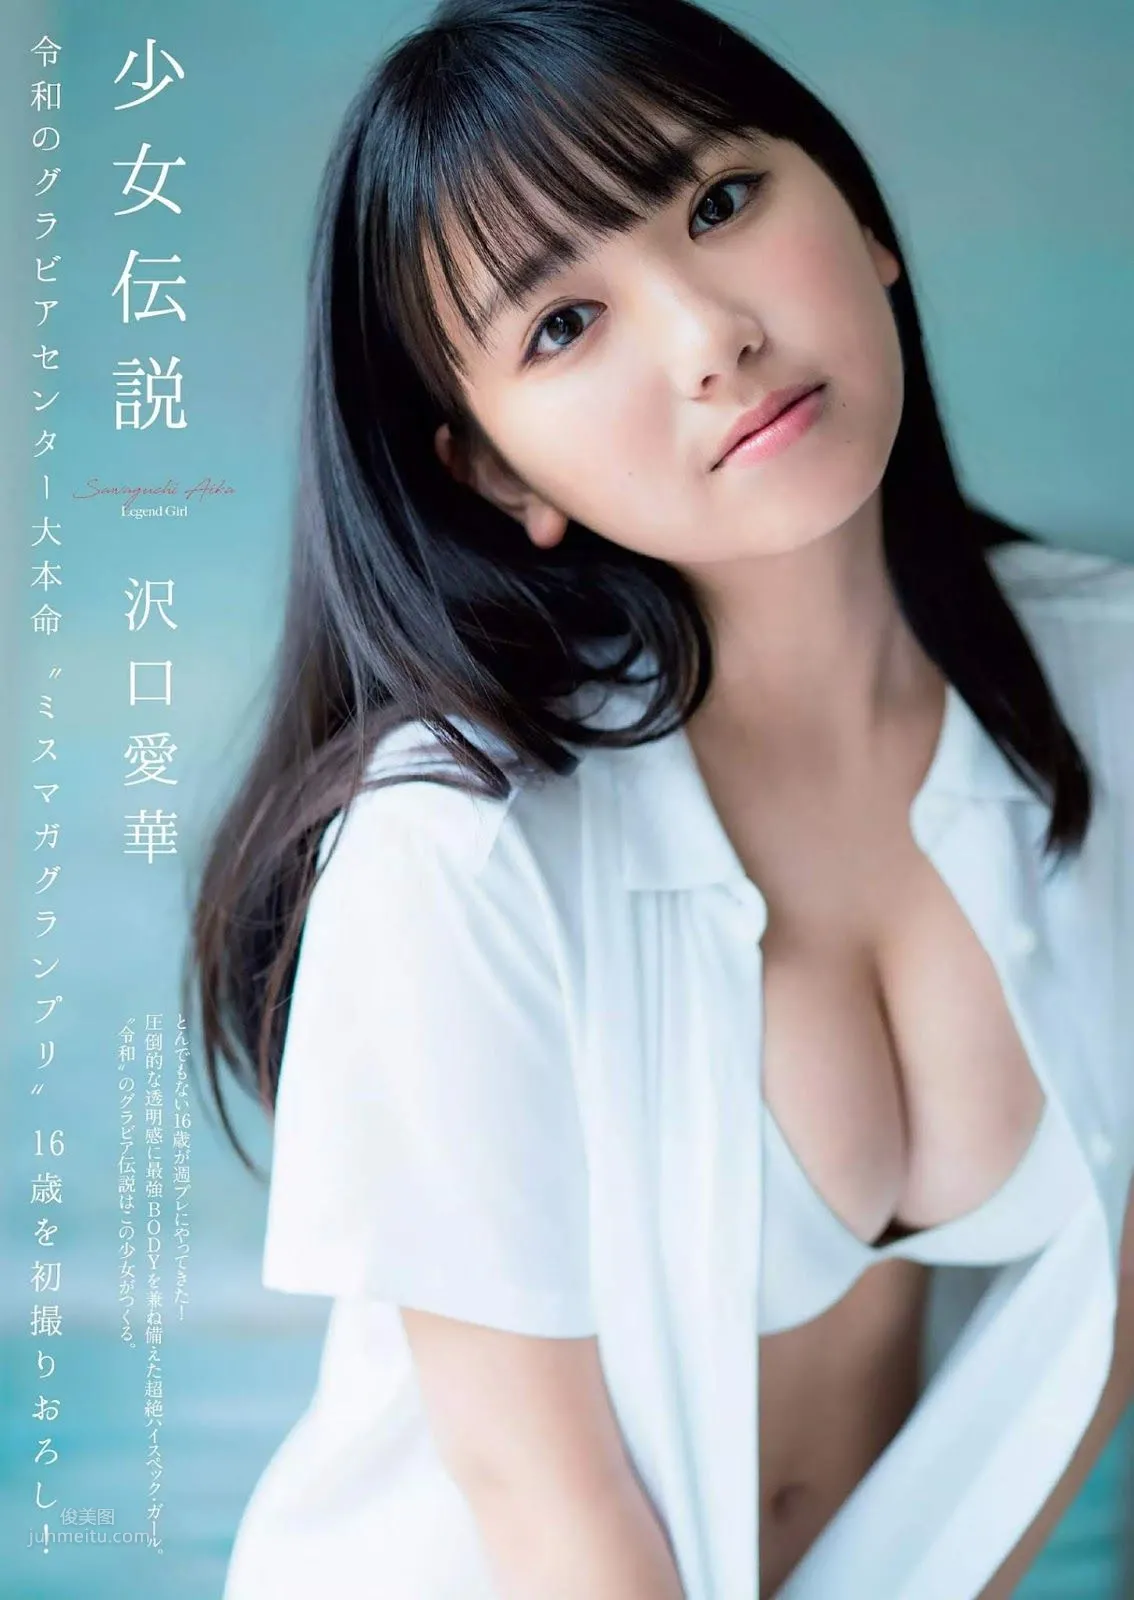 沢口愛華, Aika Sawaguchi - Weekly Playboy, 2019.08.05 『少女伝説』_0